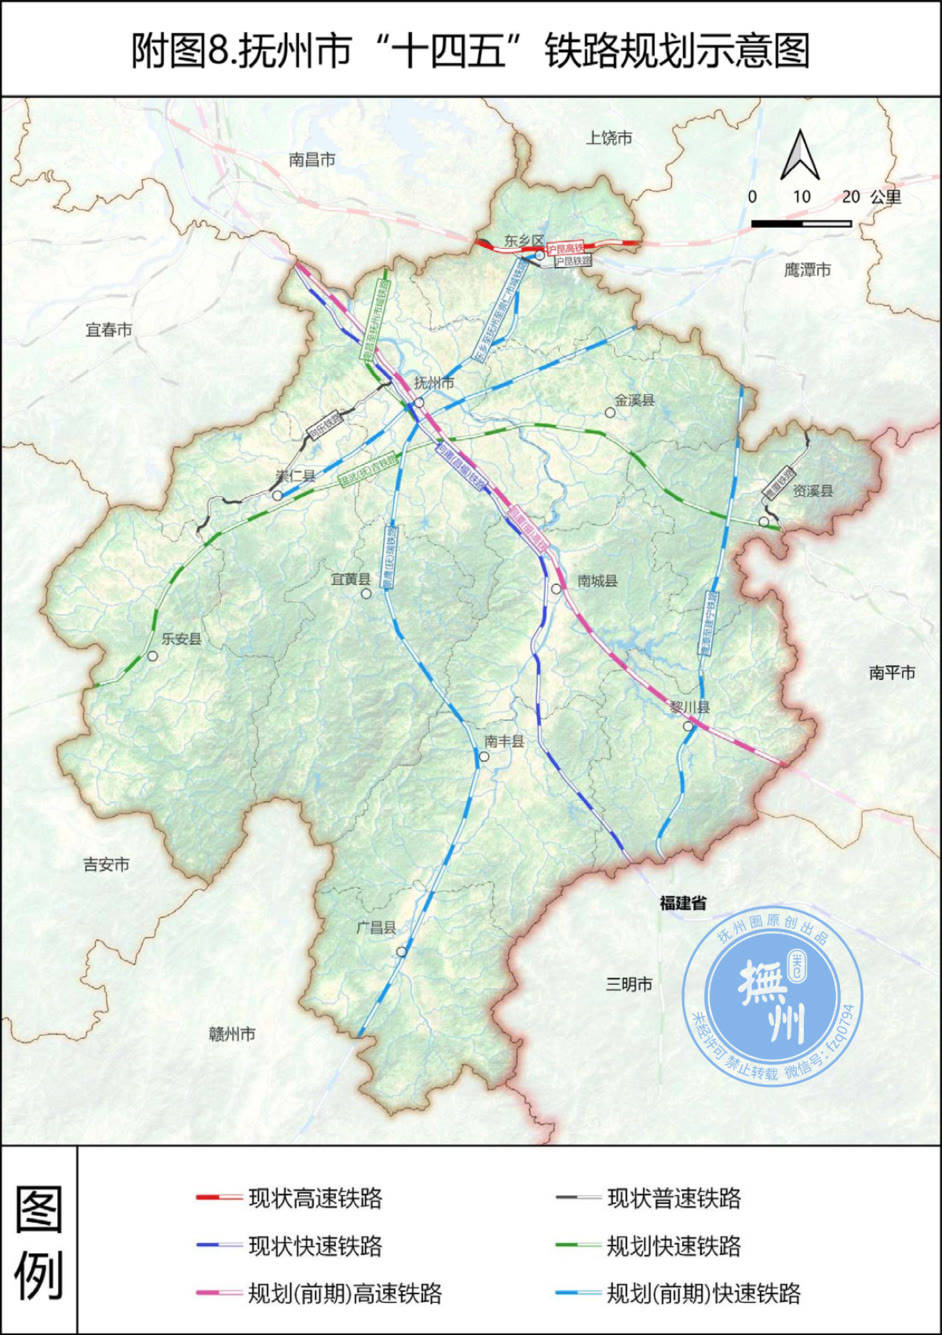 《抚州市"十四五"综合交通规划》显示:昌厦(福)高铁为"十四五"期内